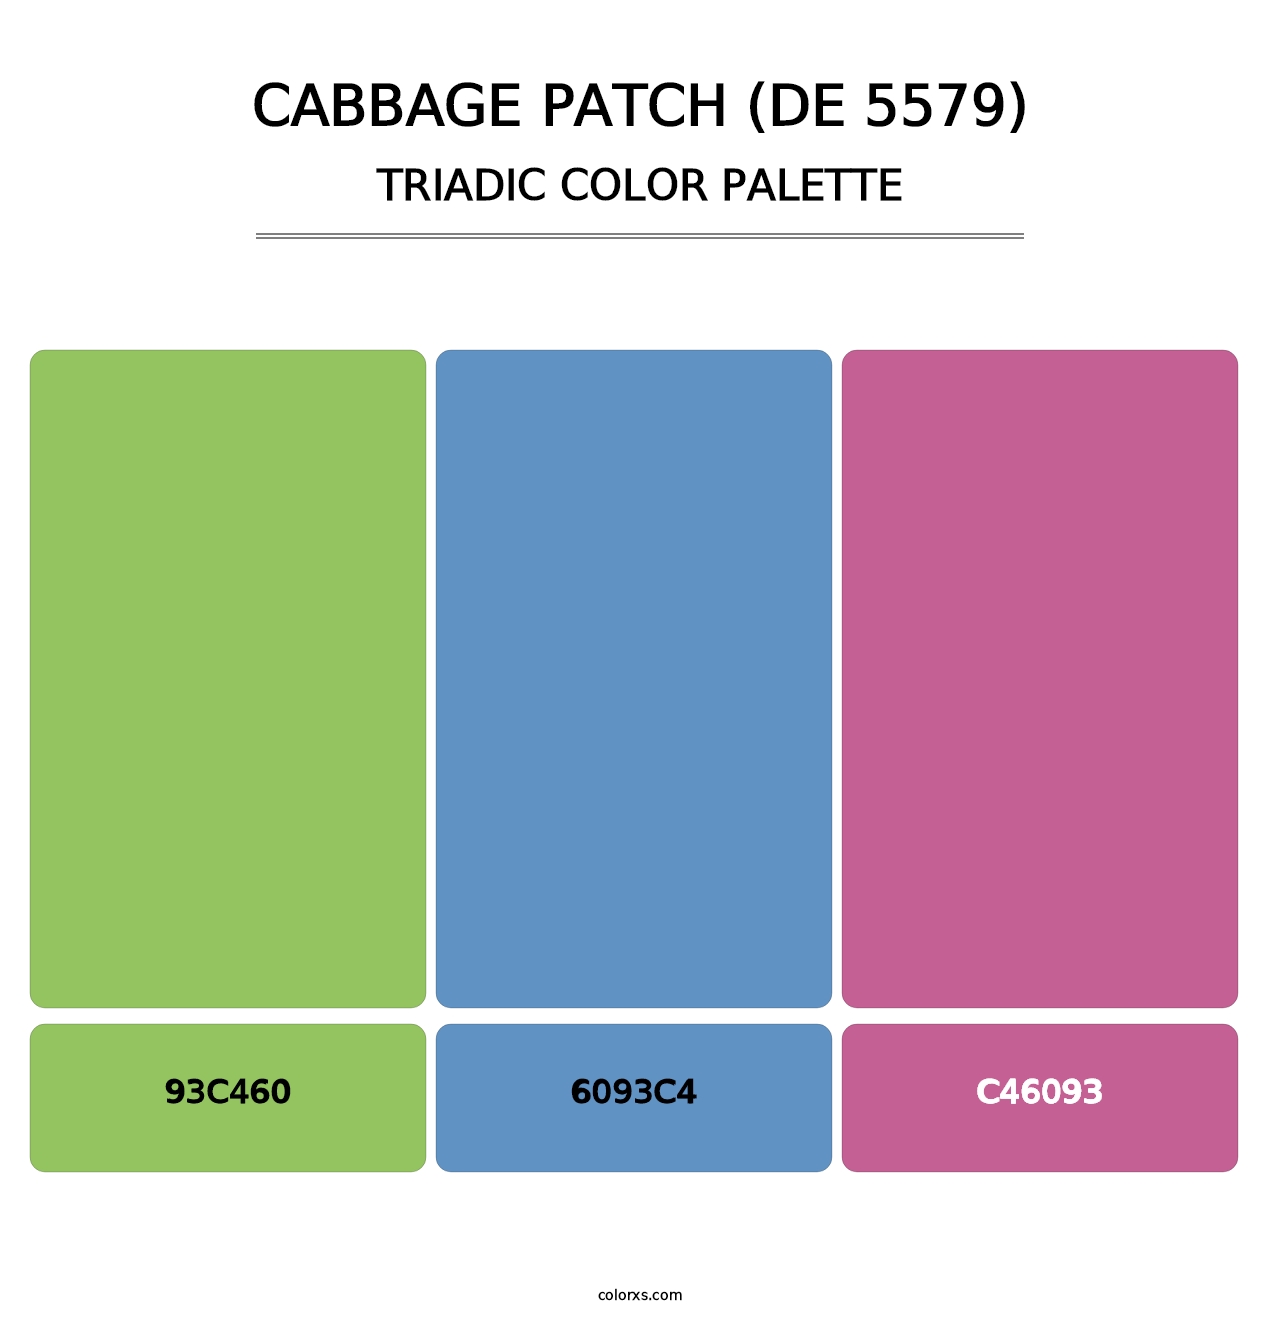 Cabbage Patch (DE 5579) - Triadic Color Palette